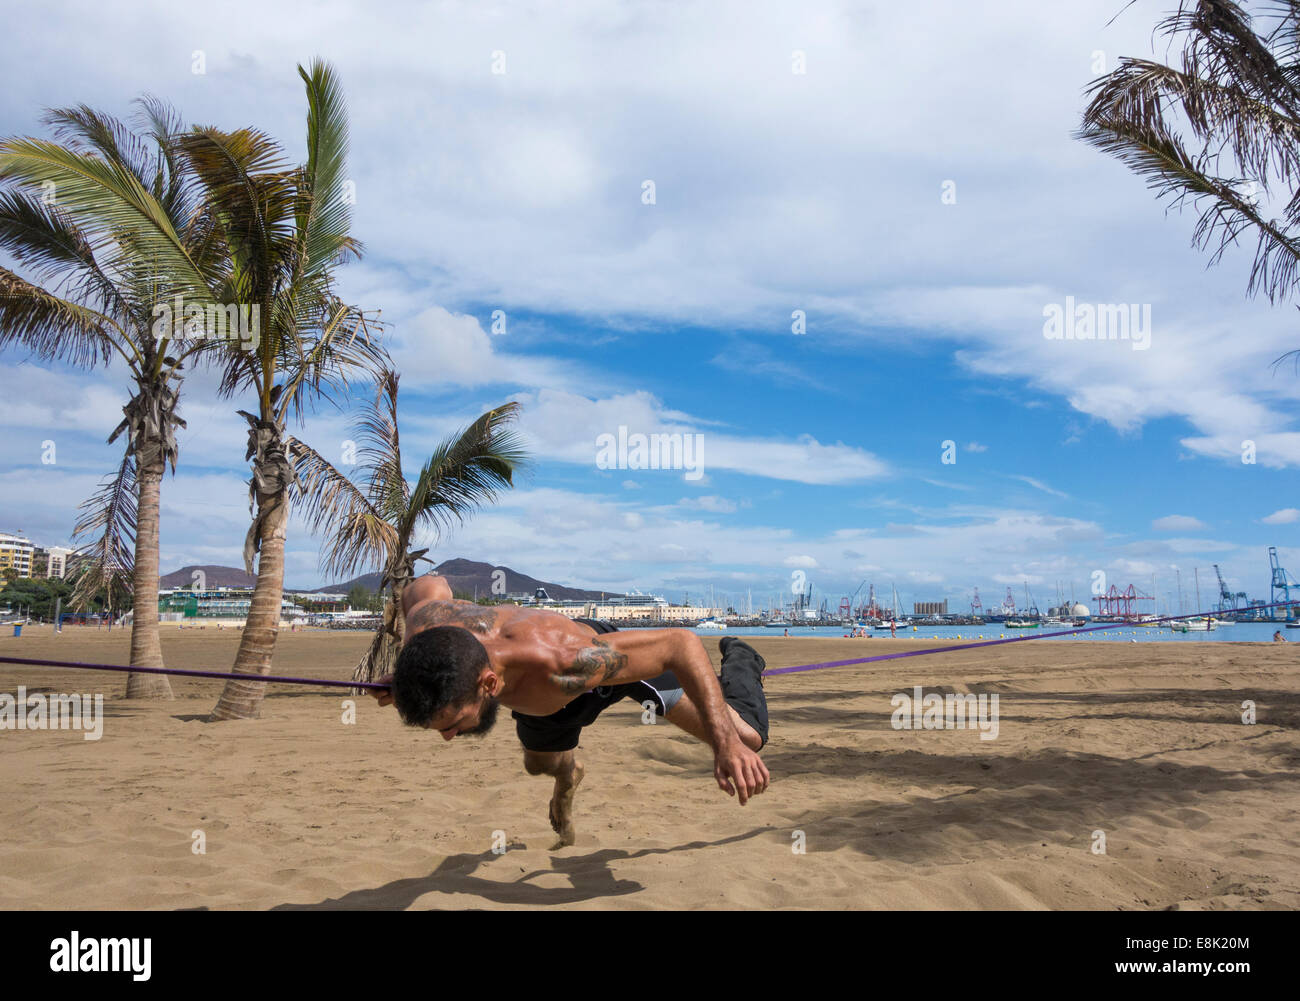 El hombre realizar volteretas y gimnasia desmonta en slackline atadas entre árboles de Plam Beach en España Foto de stock